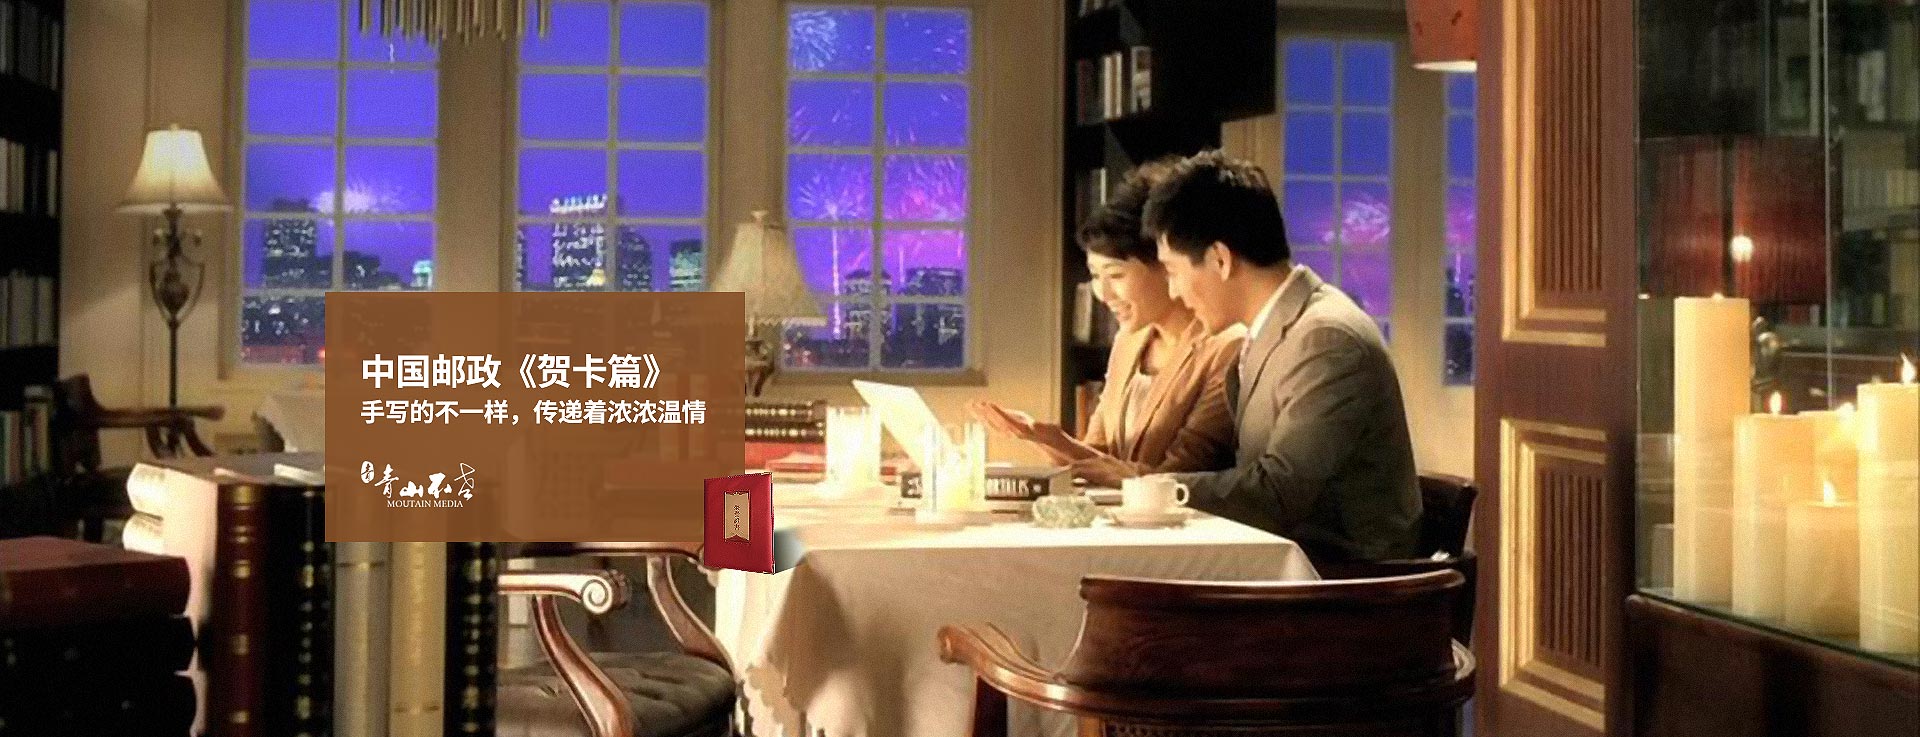 广告片拍摄制作《中国邮政-贺卡篇》